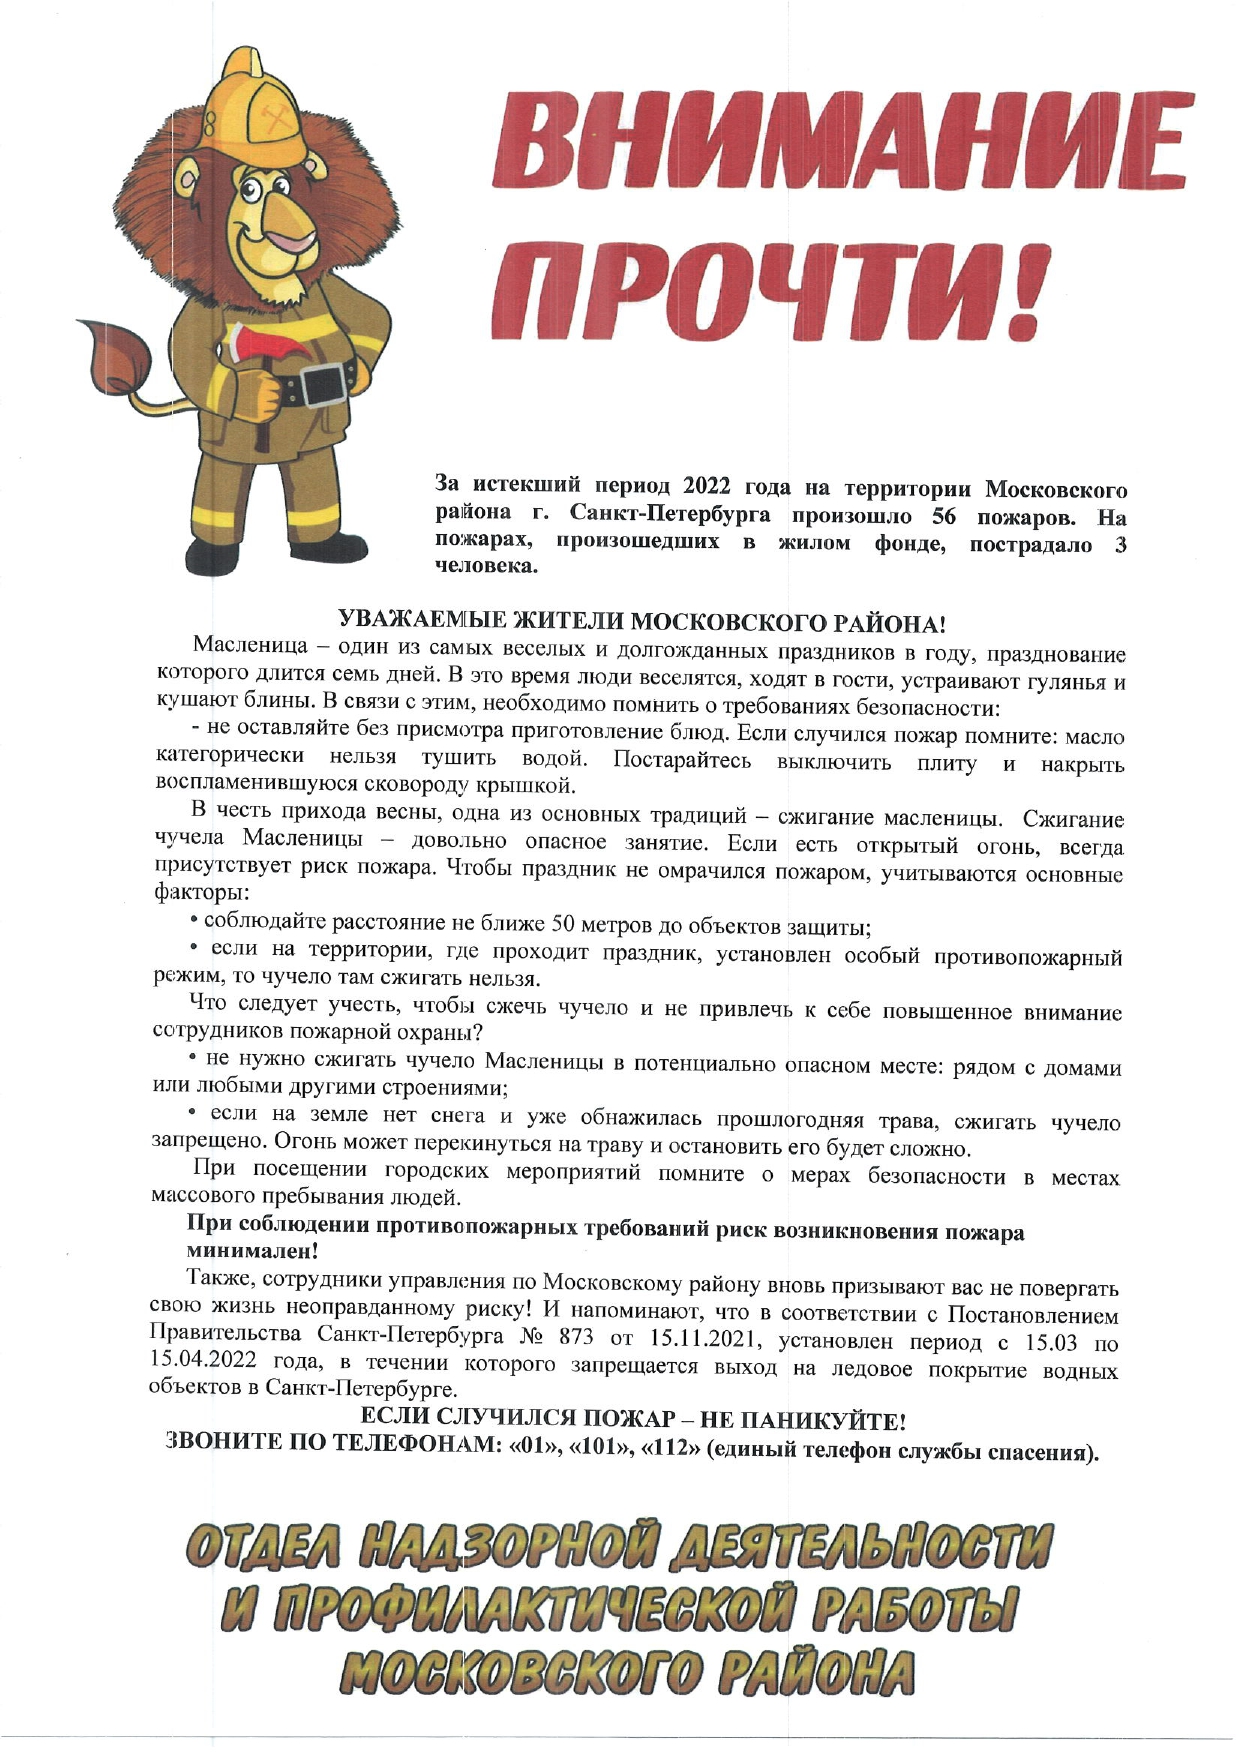 информация о пожарах в Московском районе за прошедший период